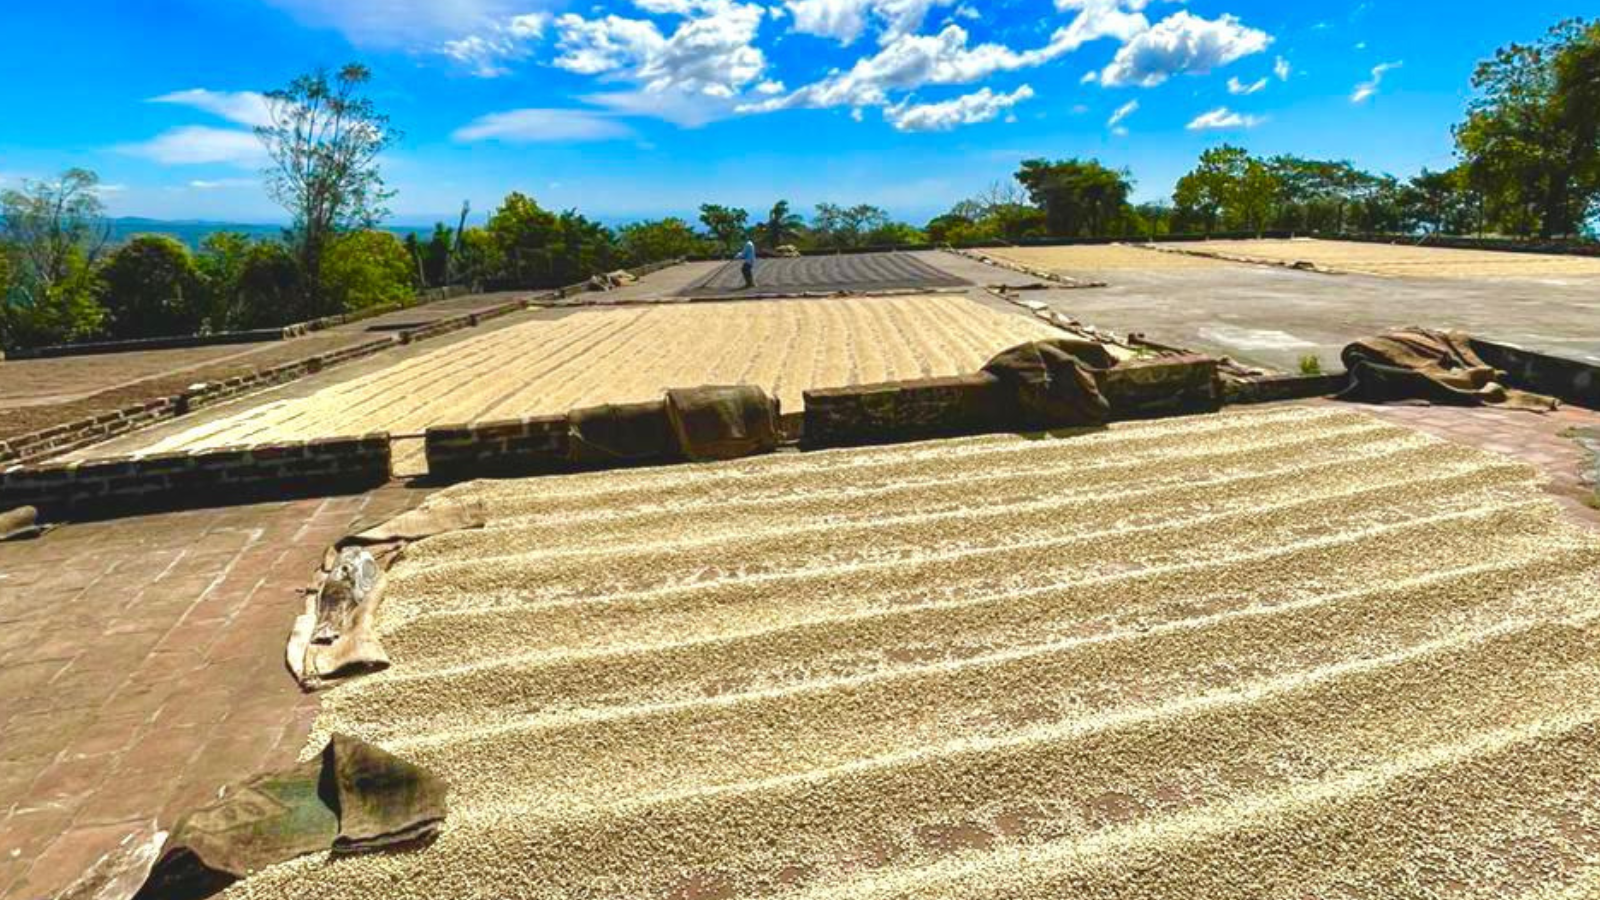 Drying green coffee on patios in El Salvador